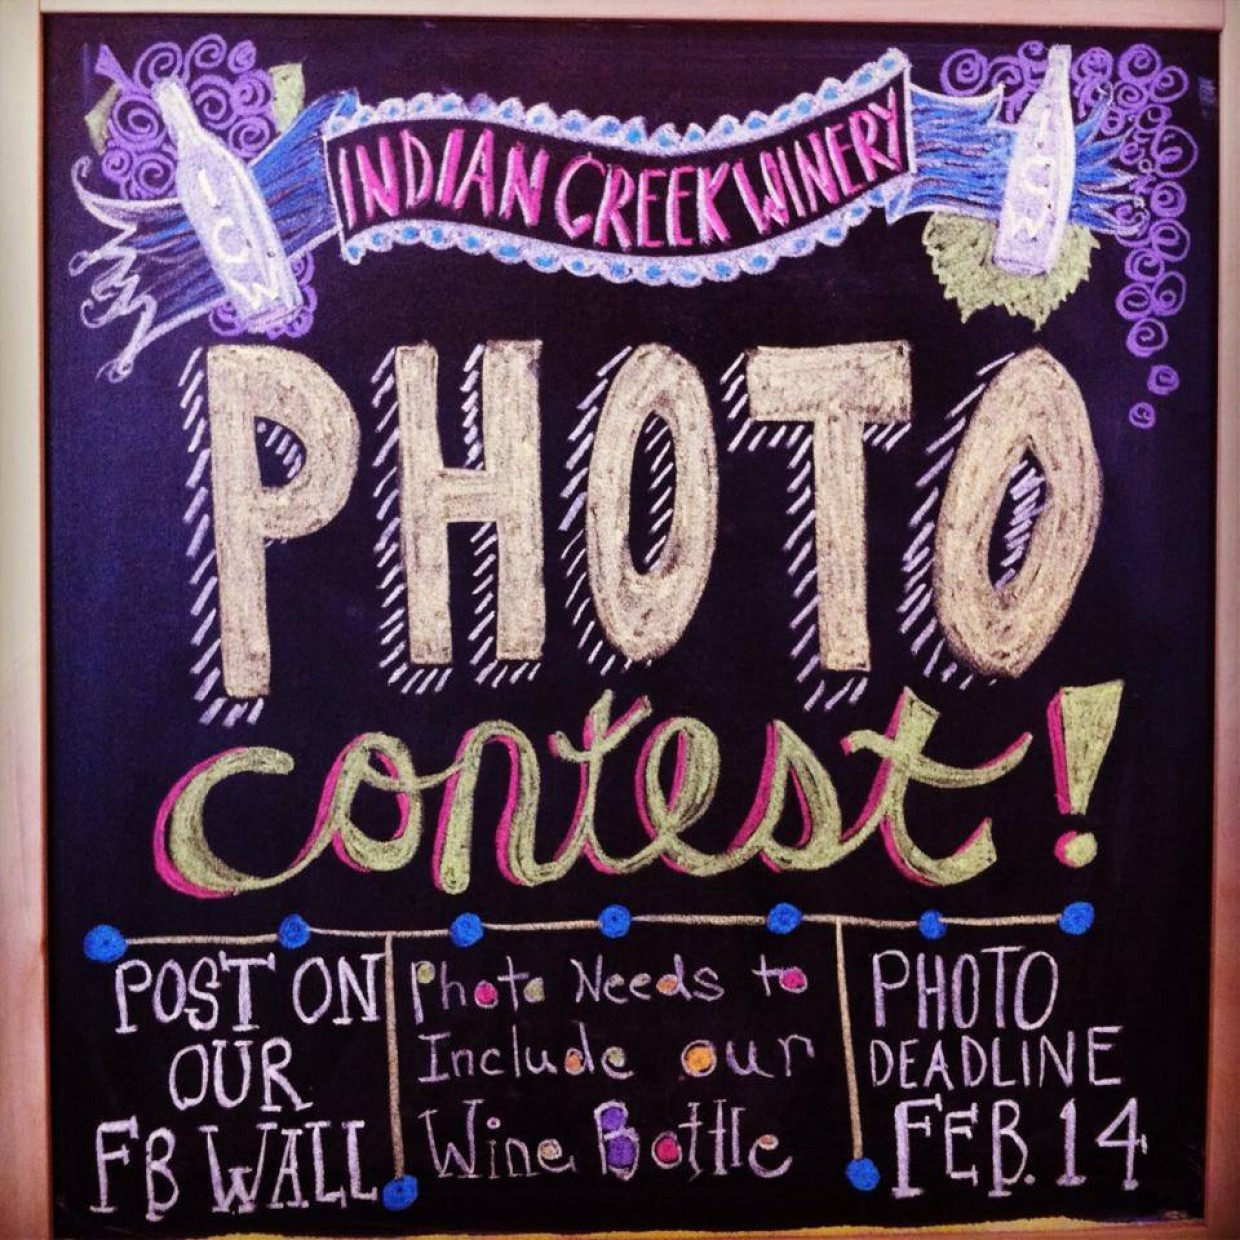 Photo Contest!